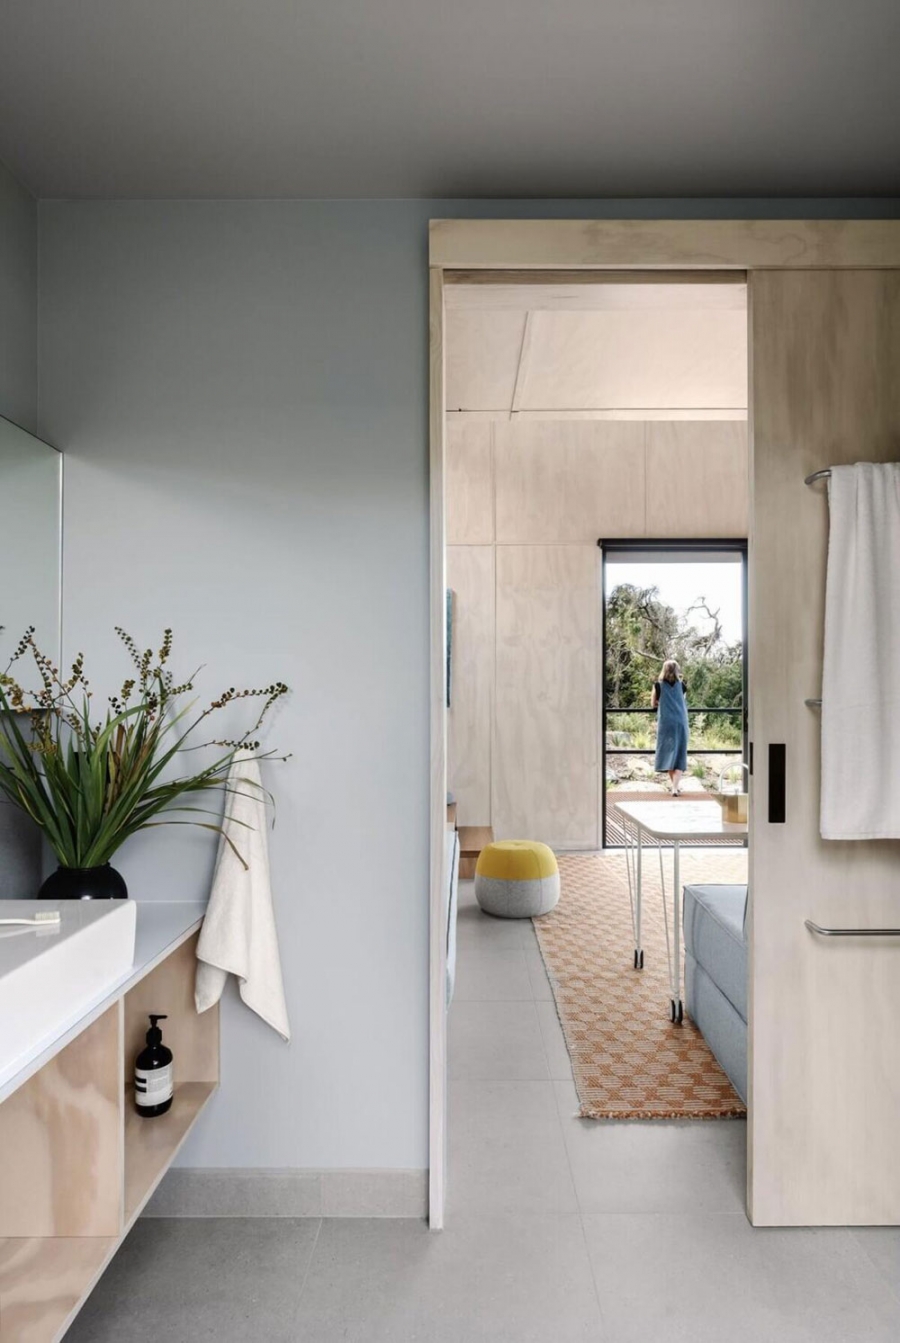 Phòng tắm được bố trí phía sau phòng khách, nội thất bằng gỗ nhẹ nhàng, tươi sáng, tủ vanity gắn tường giúp giải phóng diện tích sàn và dễ dàng vệ sinh.